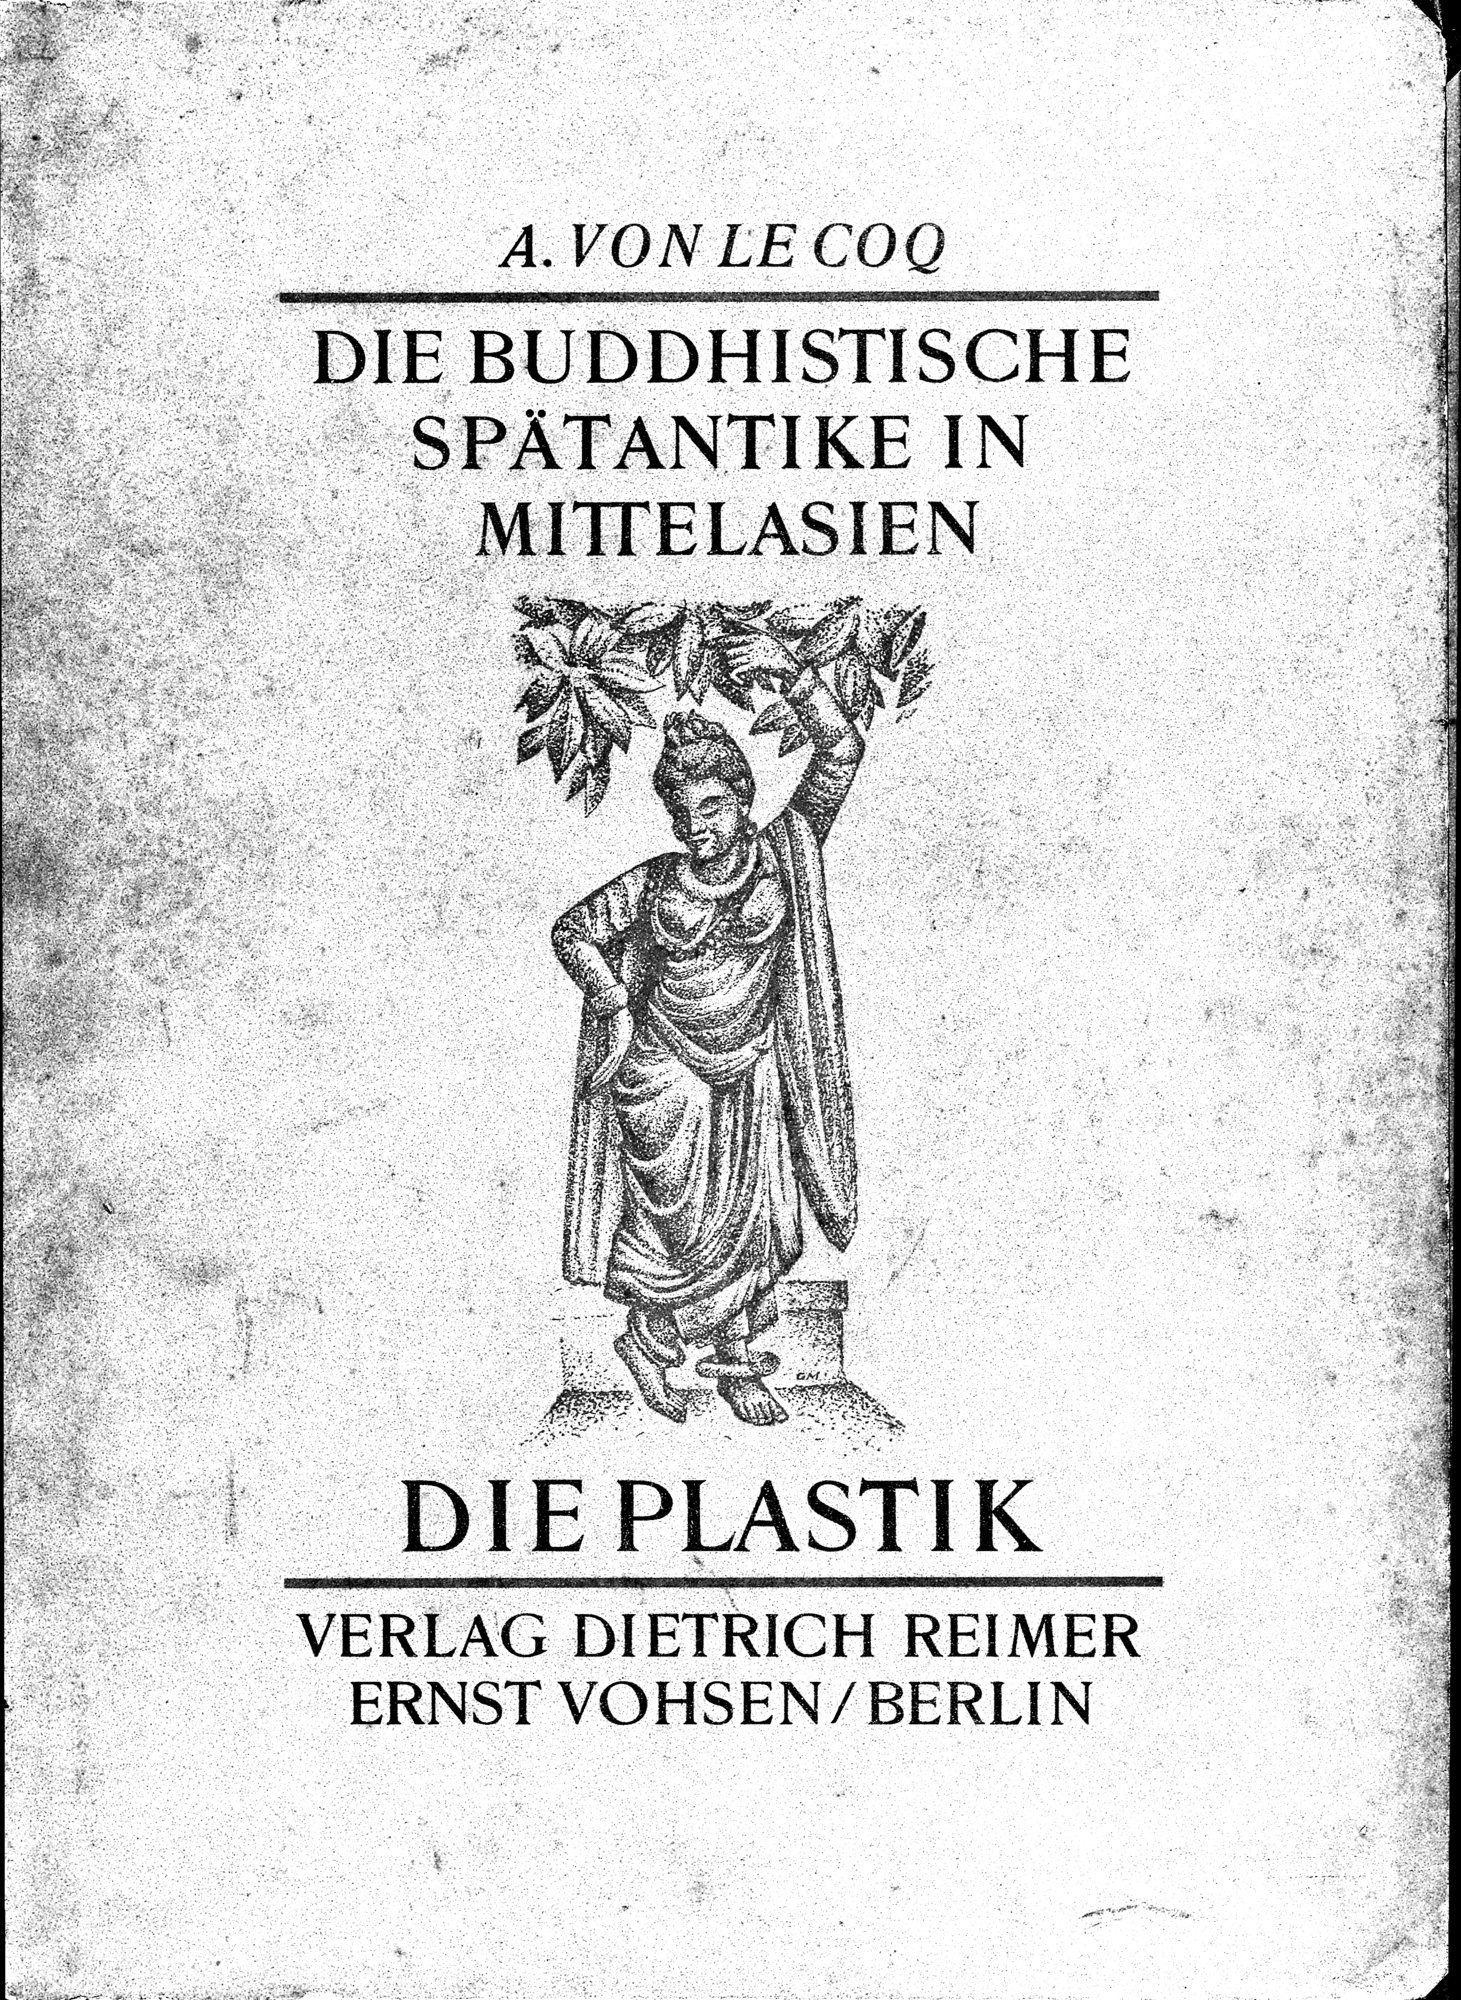 Die Buddhistische Spätantike in Mittelasien : vol.1 / Page 1 (Grayscale High Resolution Image)